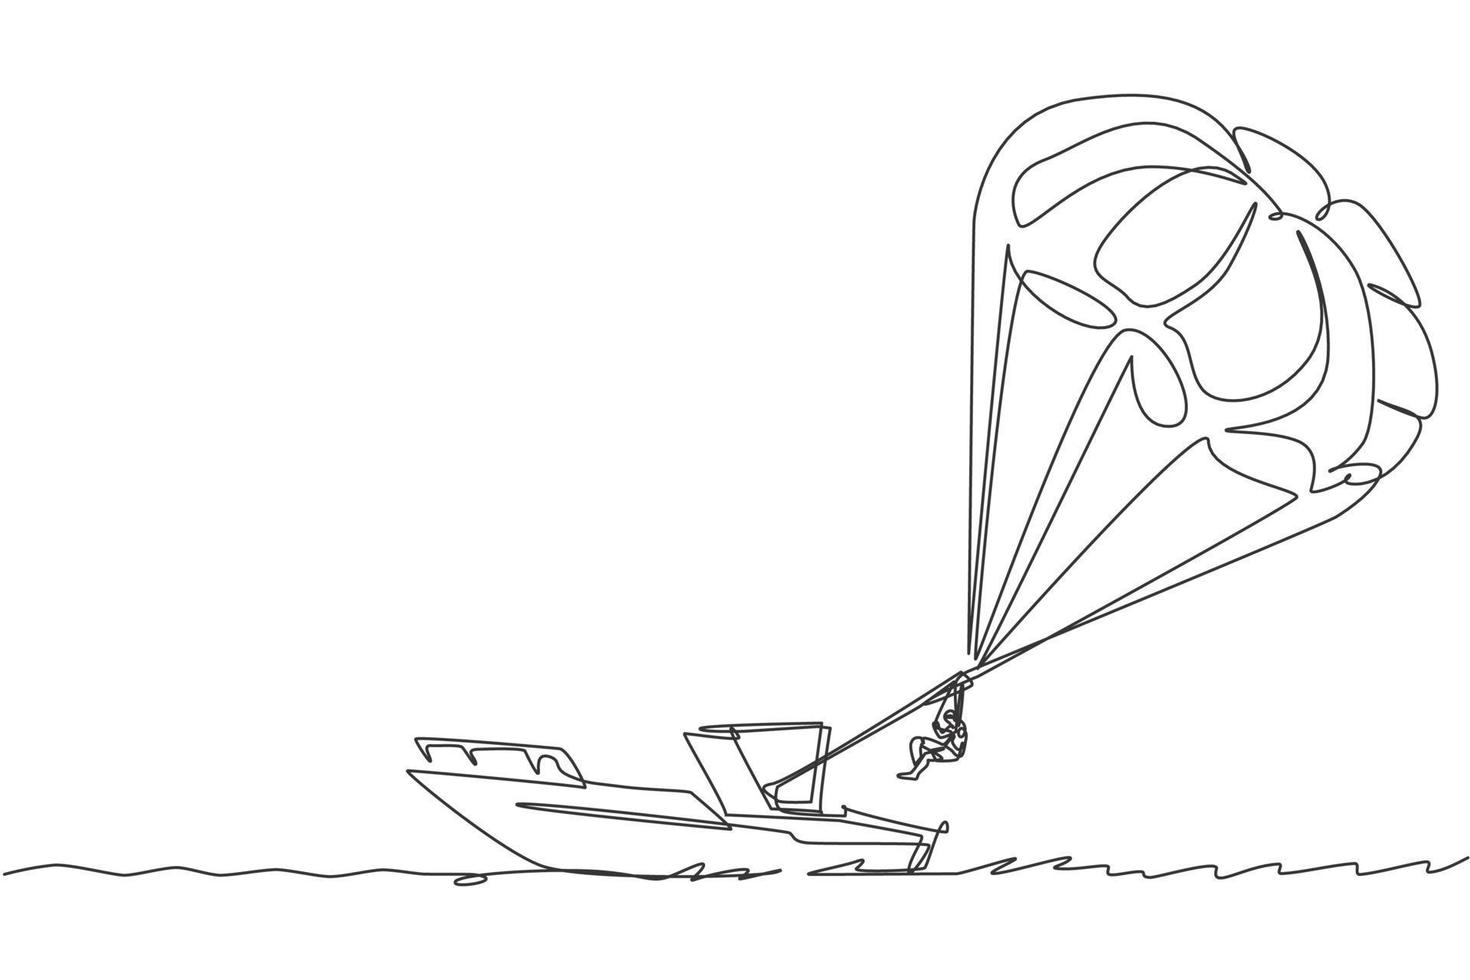 disegno a linea continua singola giovane turista che vola con il paracadute parasailing sul cielo trainato da una barca. concetto di sport per vacanze estreme. illustrazione grafica vettoriale di un disegno di linea